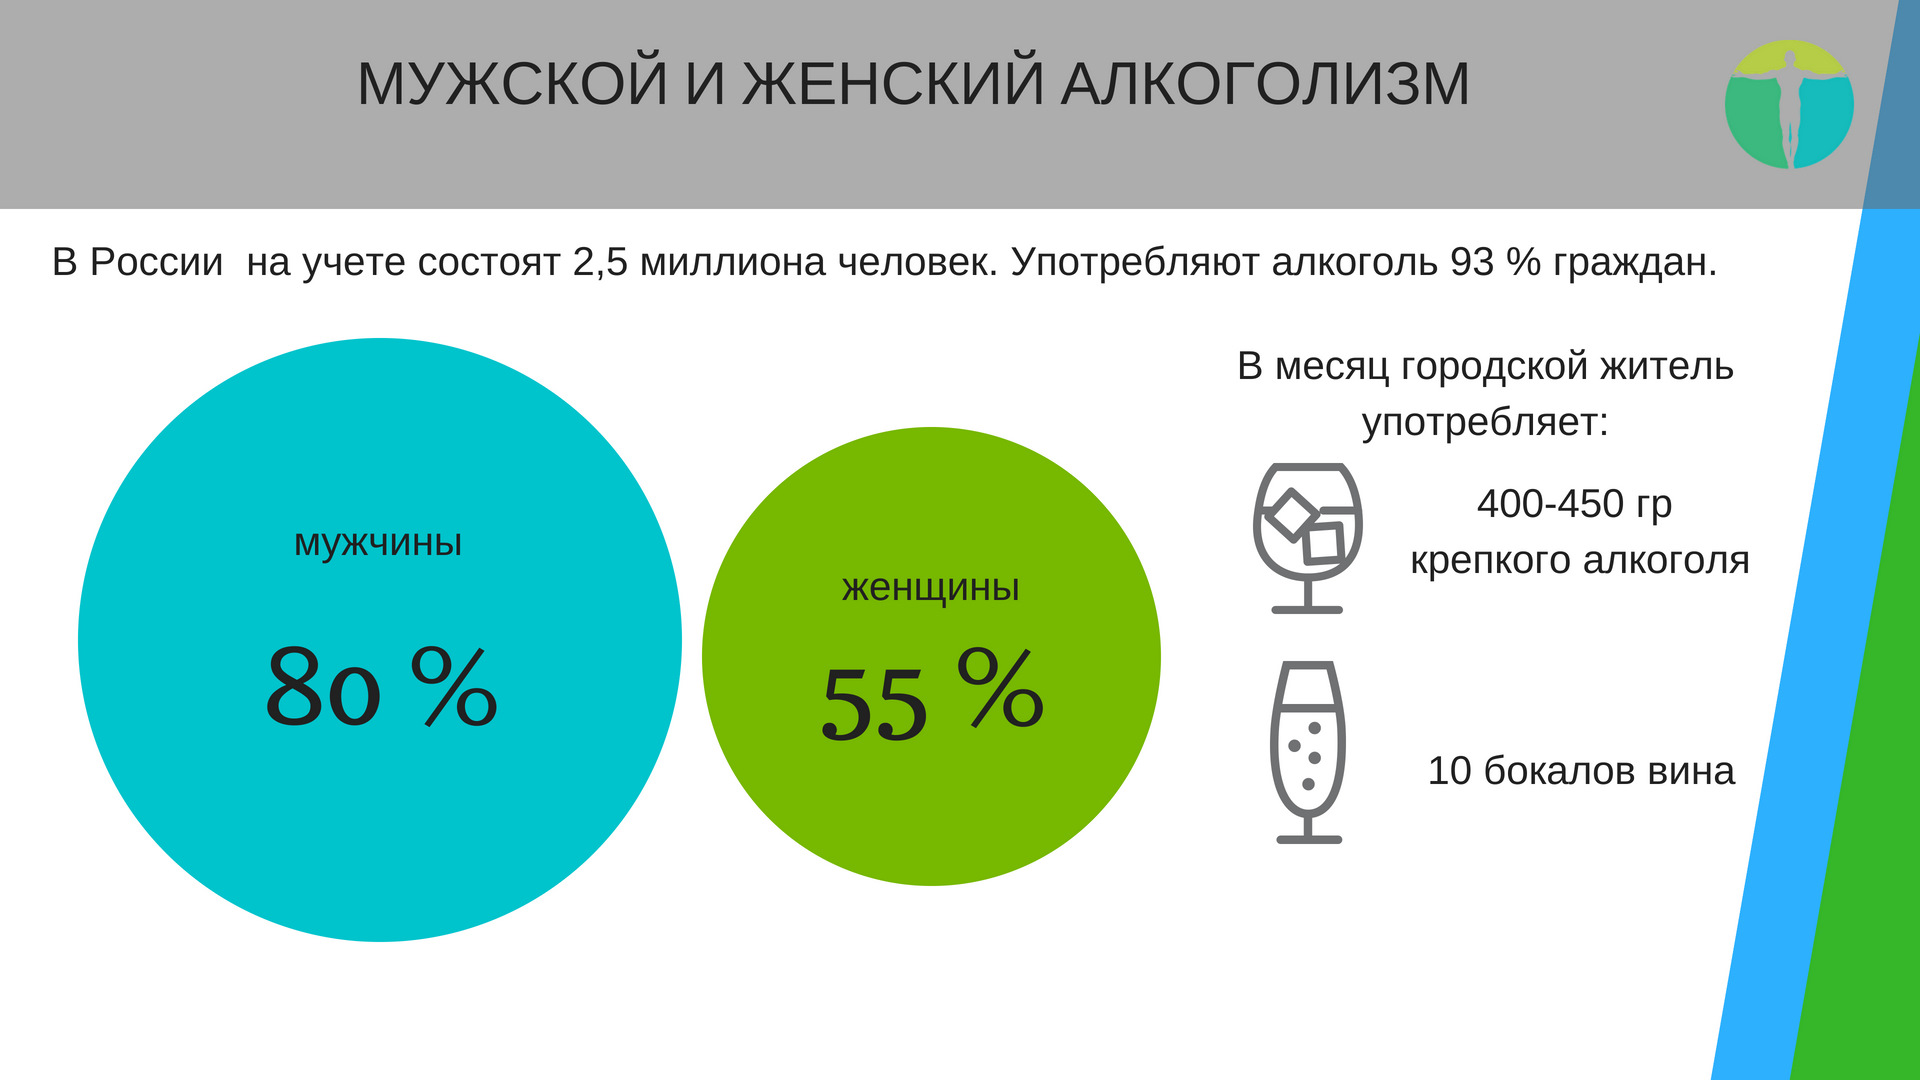 Статистика алкоголиков в России 2020